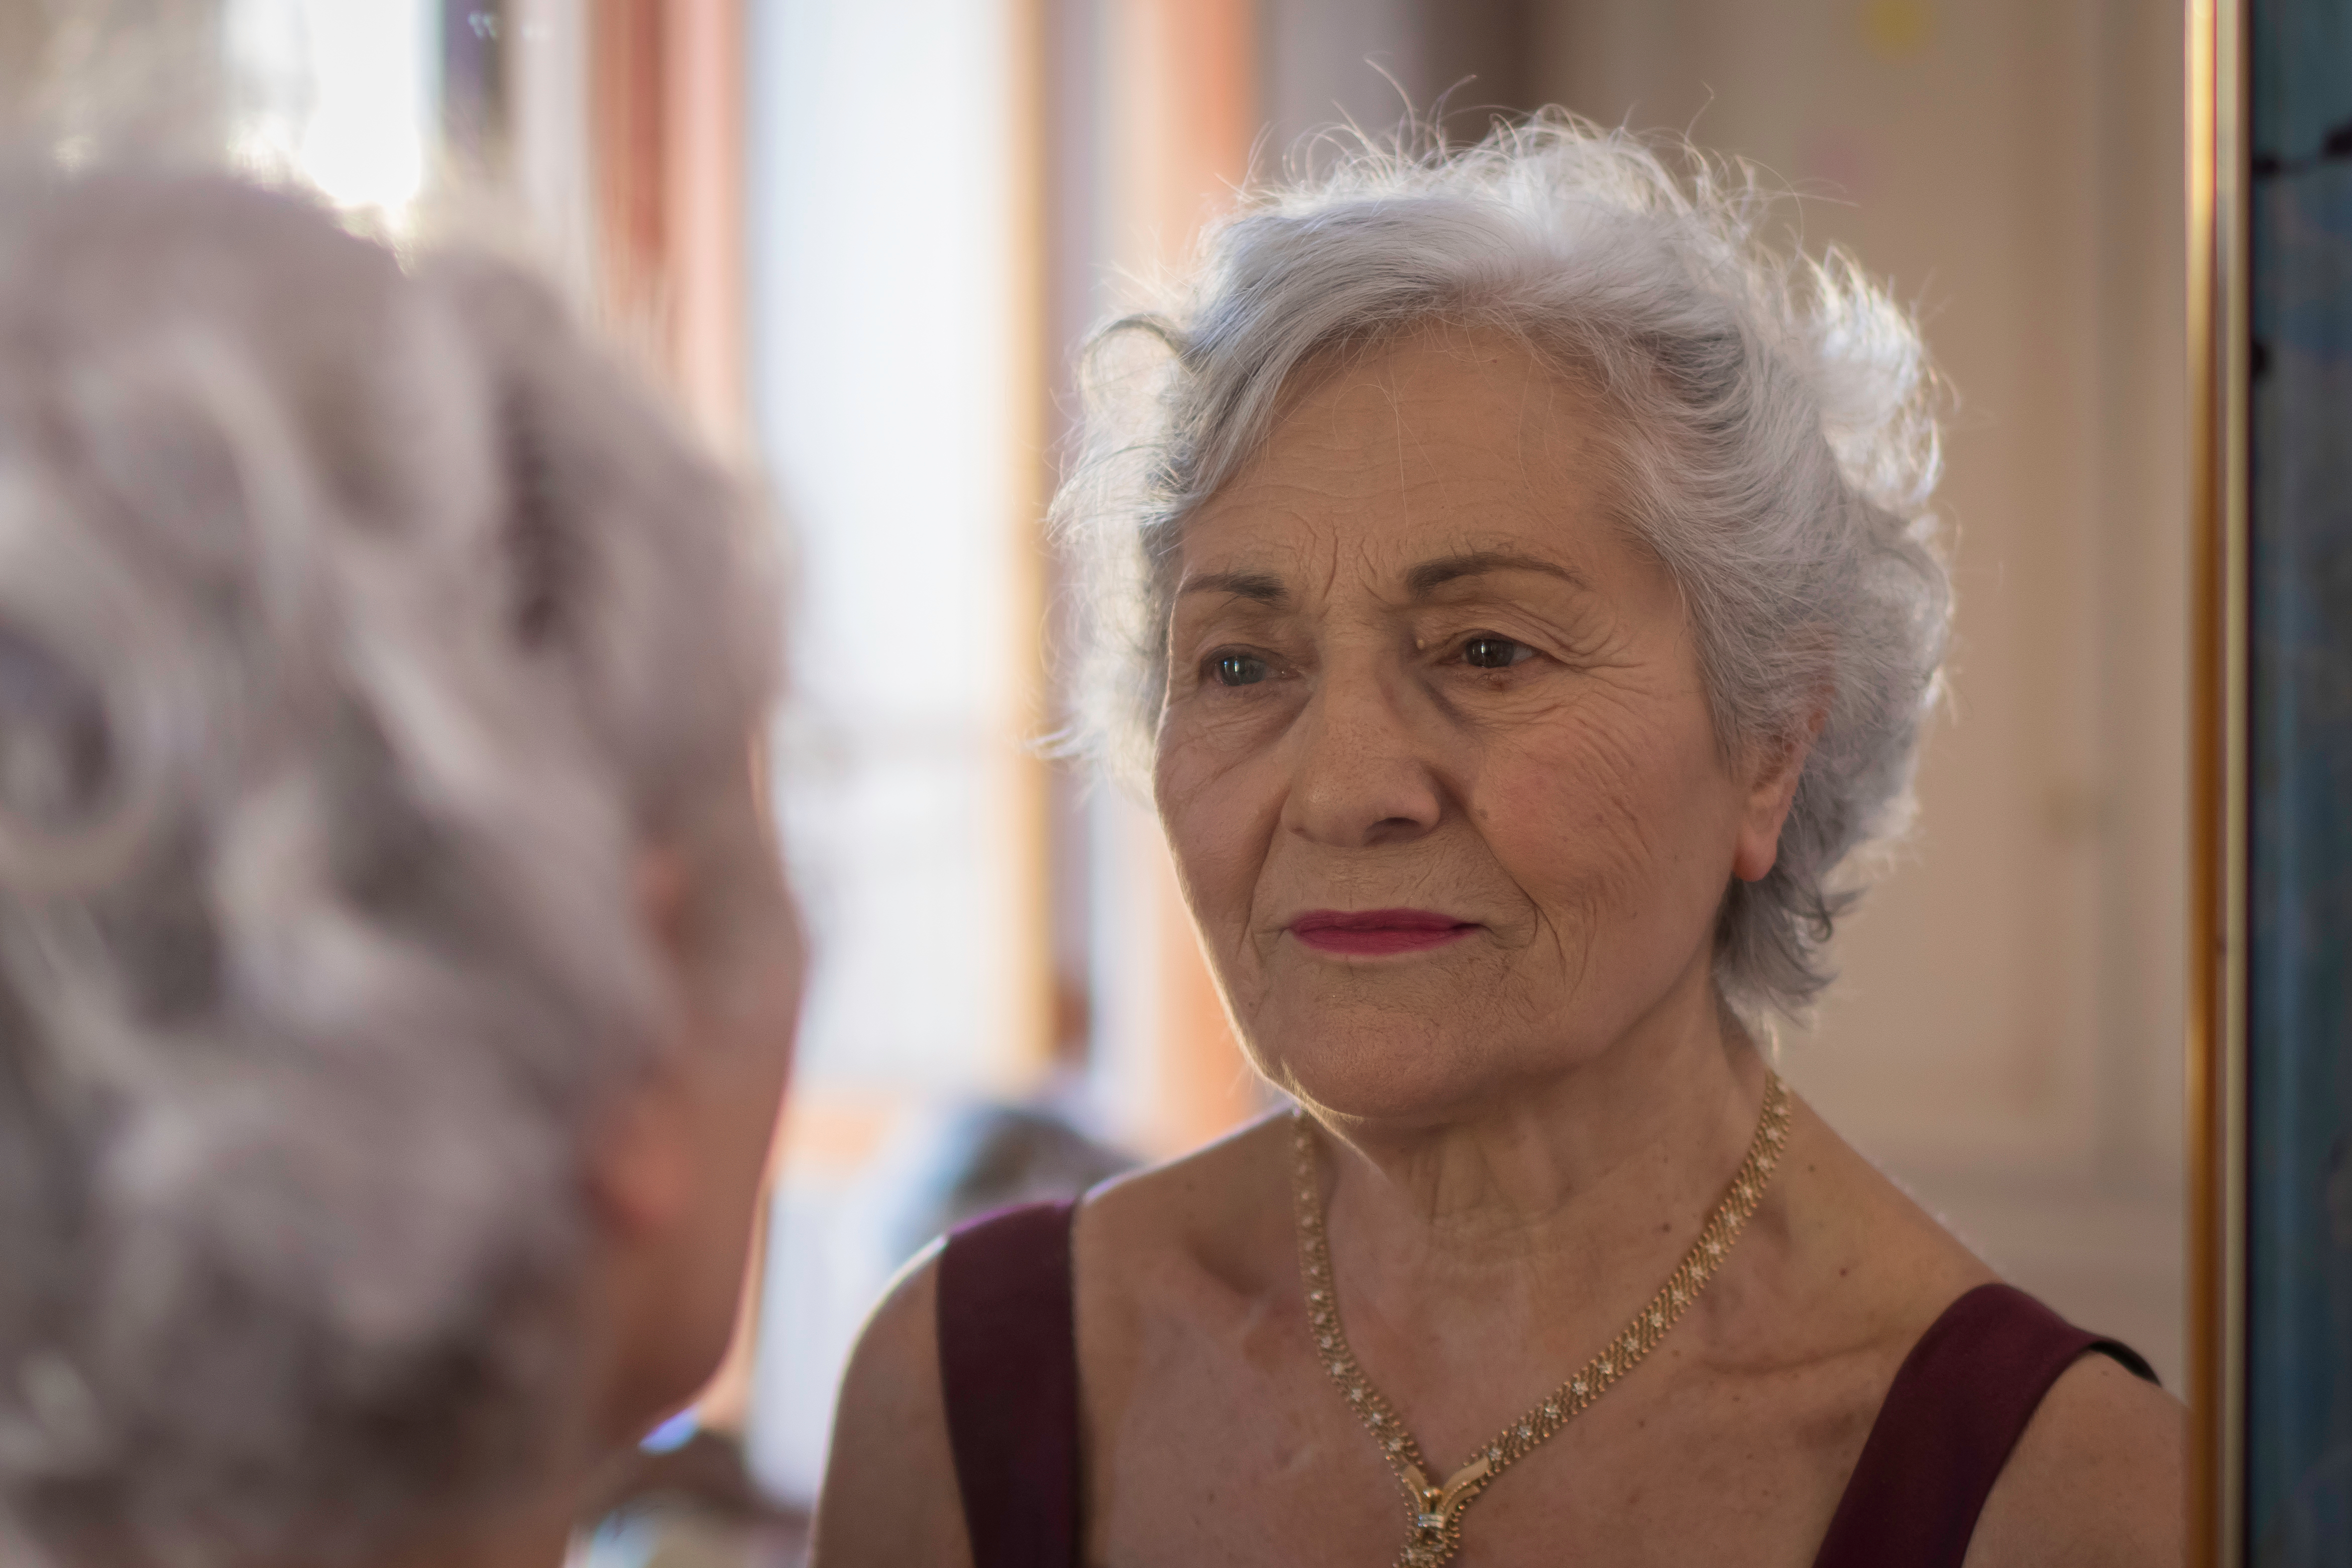 An elderly woman looking in the mirror | Source: Shutterstock